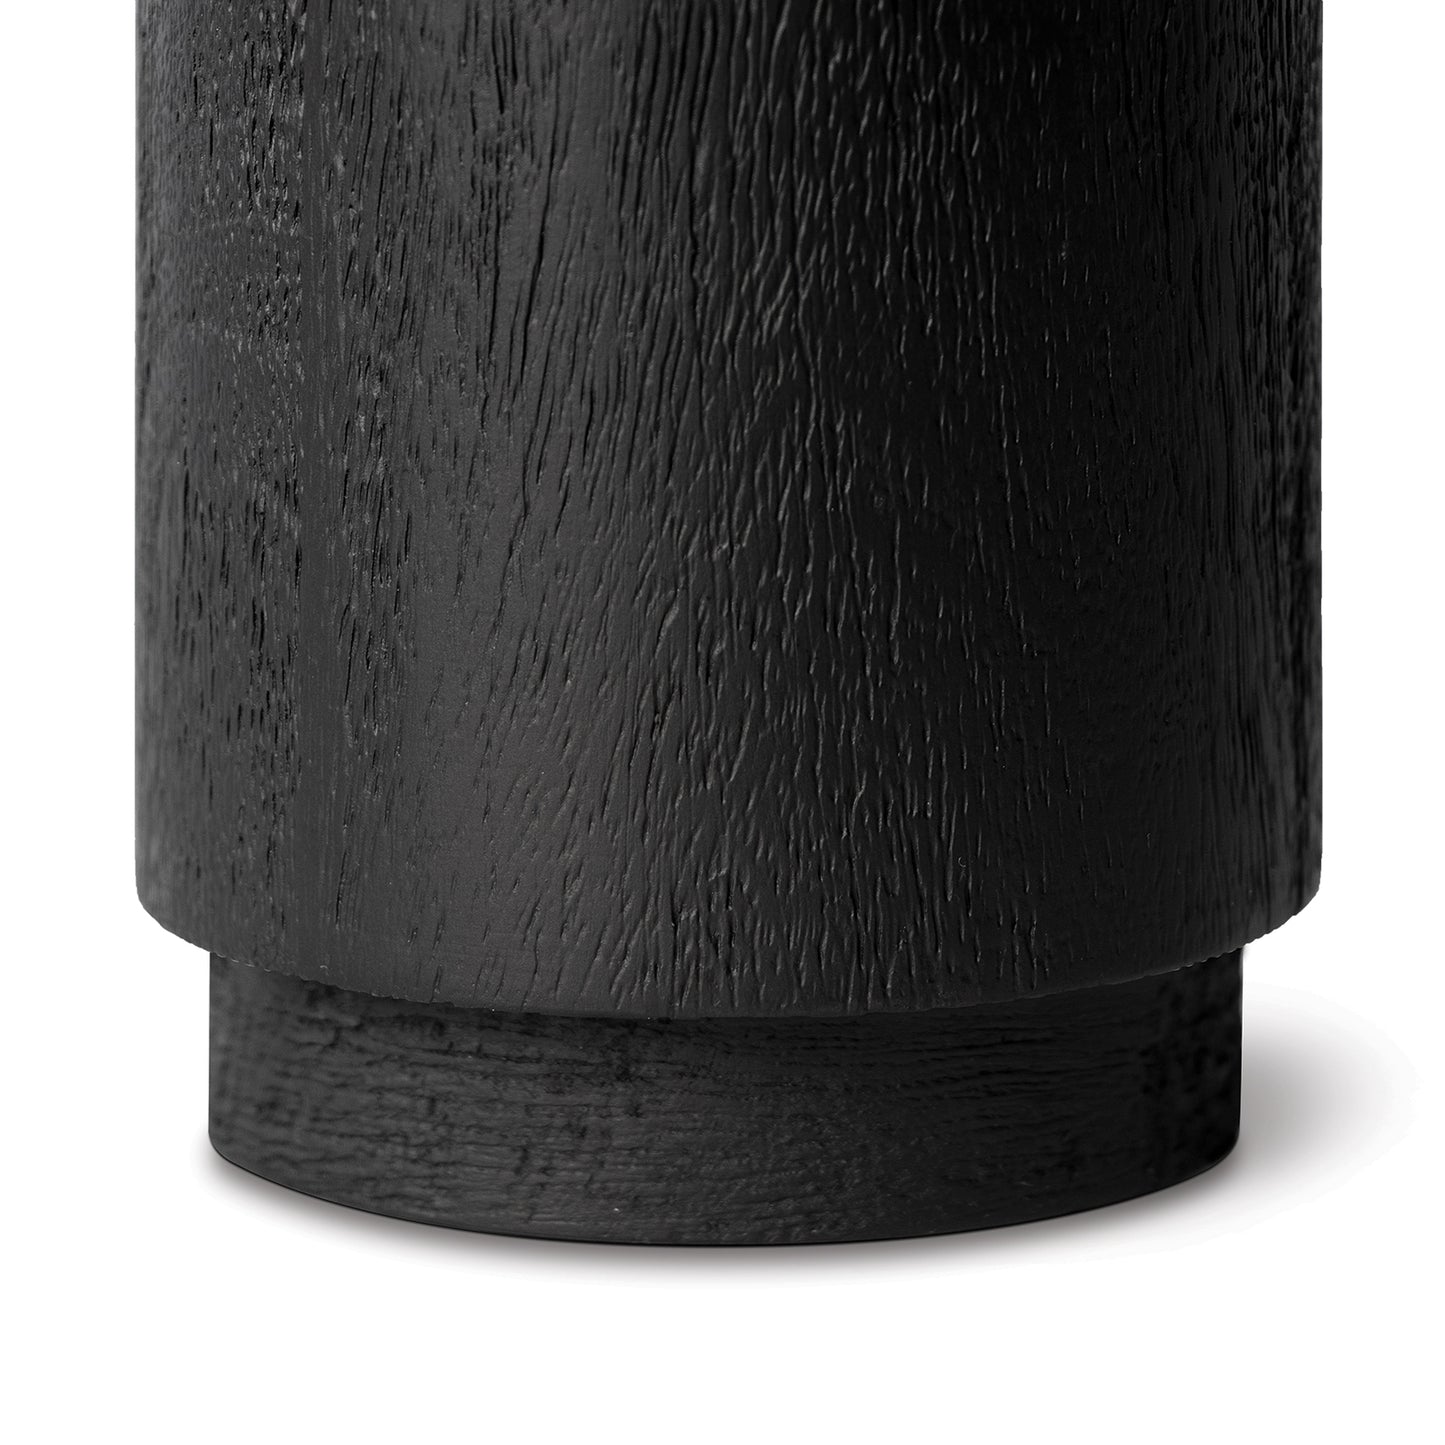 Savior Vase Set in Black by Regina Andrew